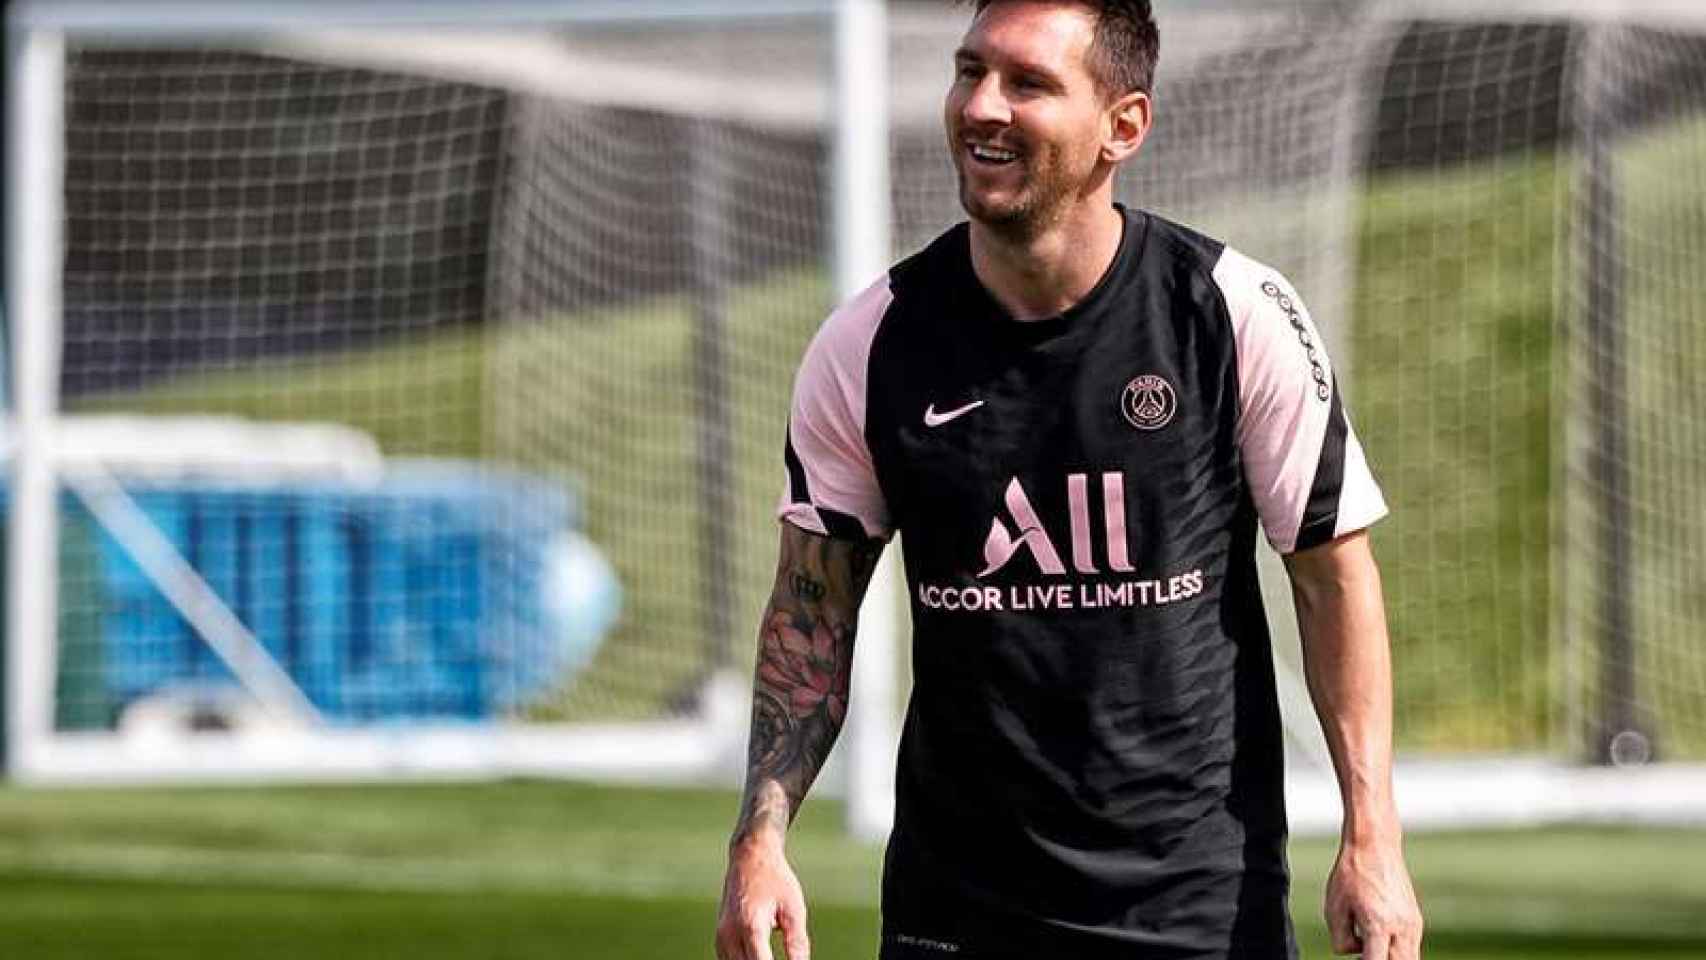 Messi sonriendo durante el entrenamiento del PSG